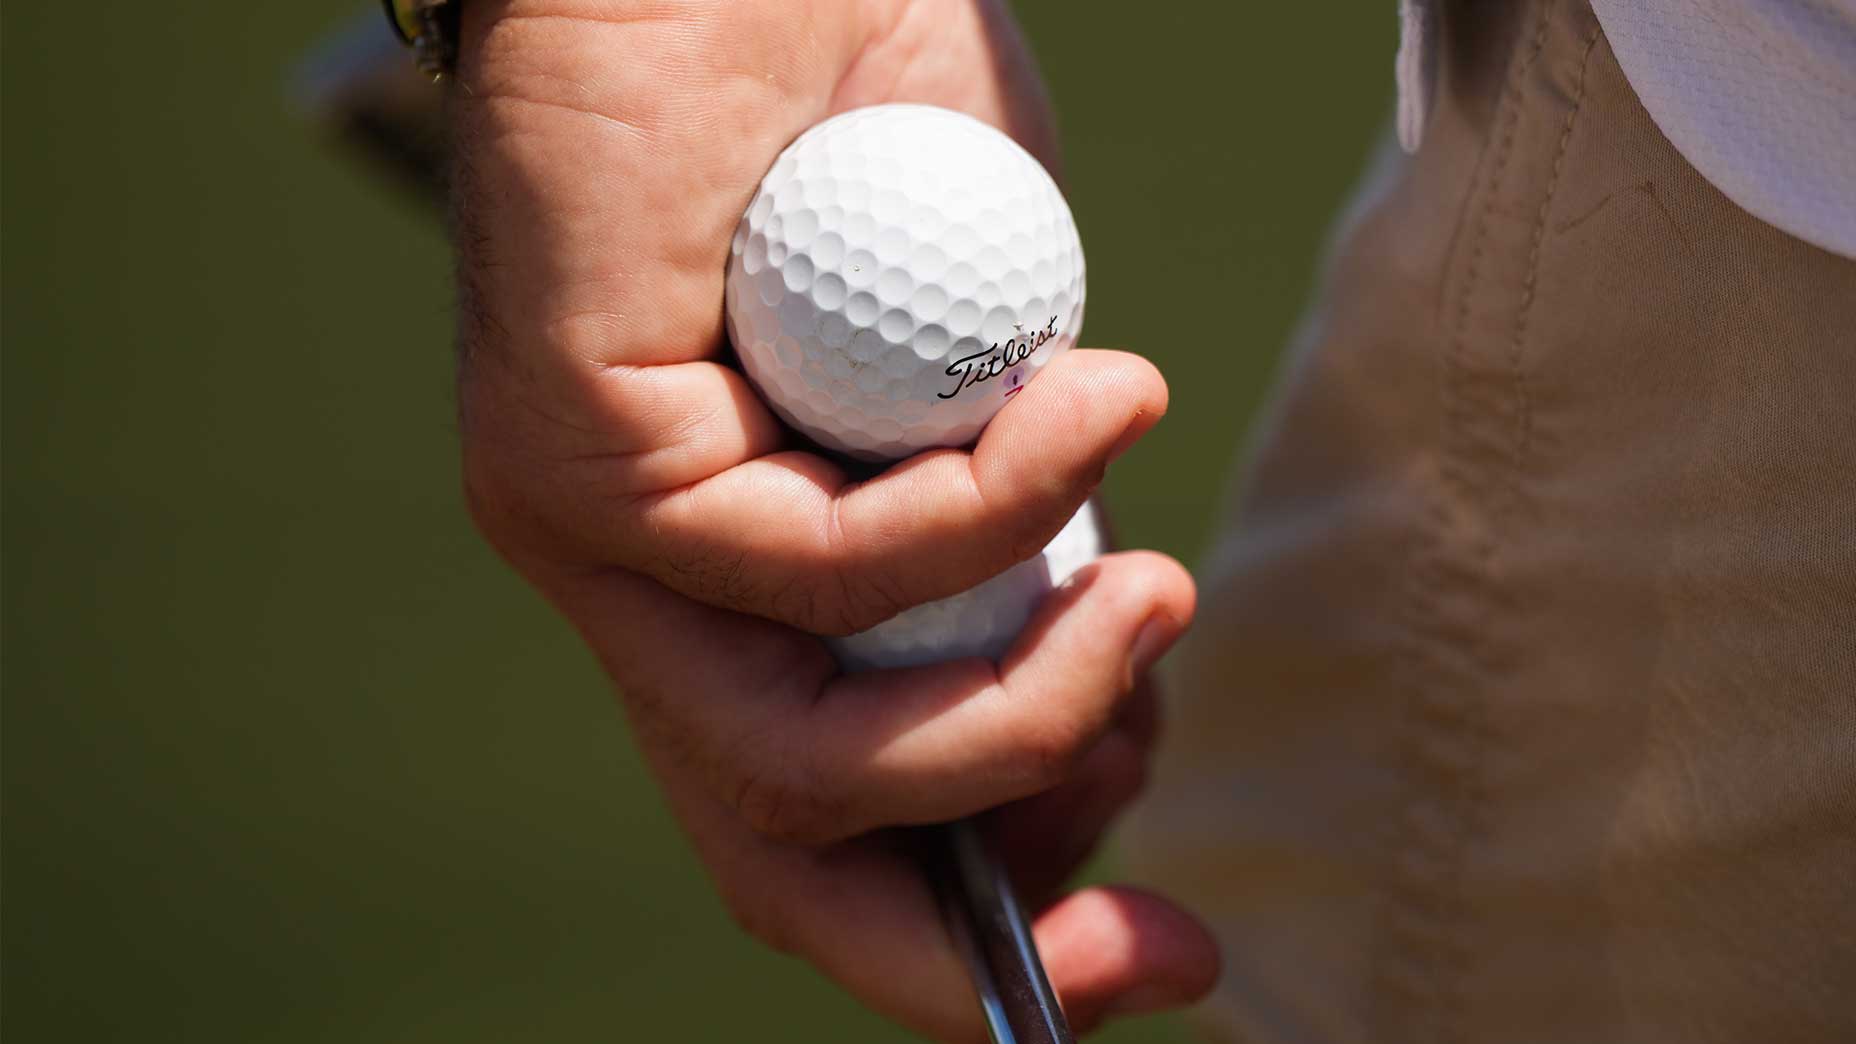 A titleist golf ball